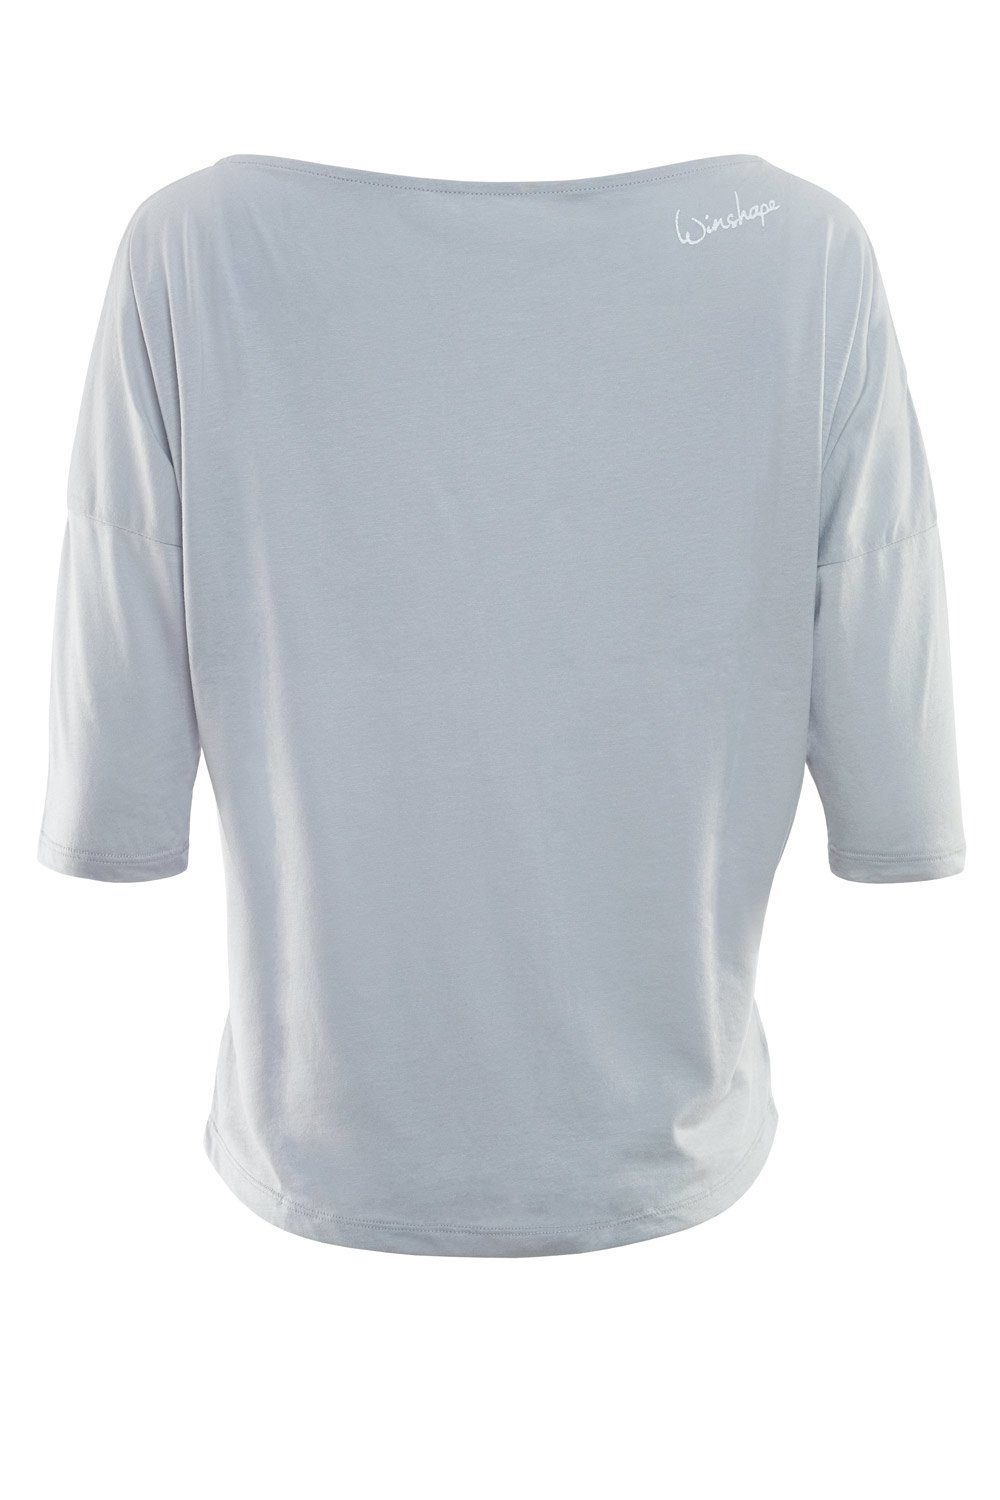 ultra Glitzer-Aufdruck glitzer - grey MCS001 Winshape cool mit weißem leicht weiß 3/4-Arm-Shirt